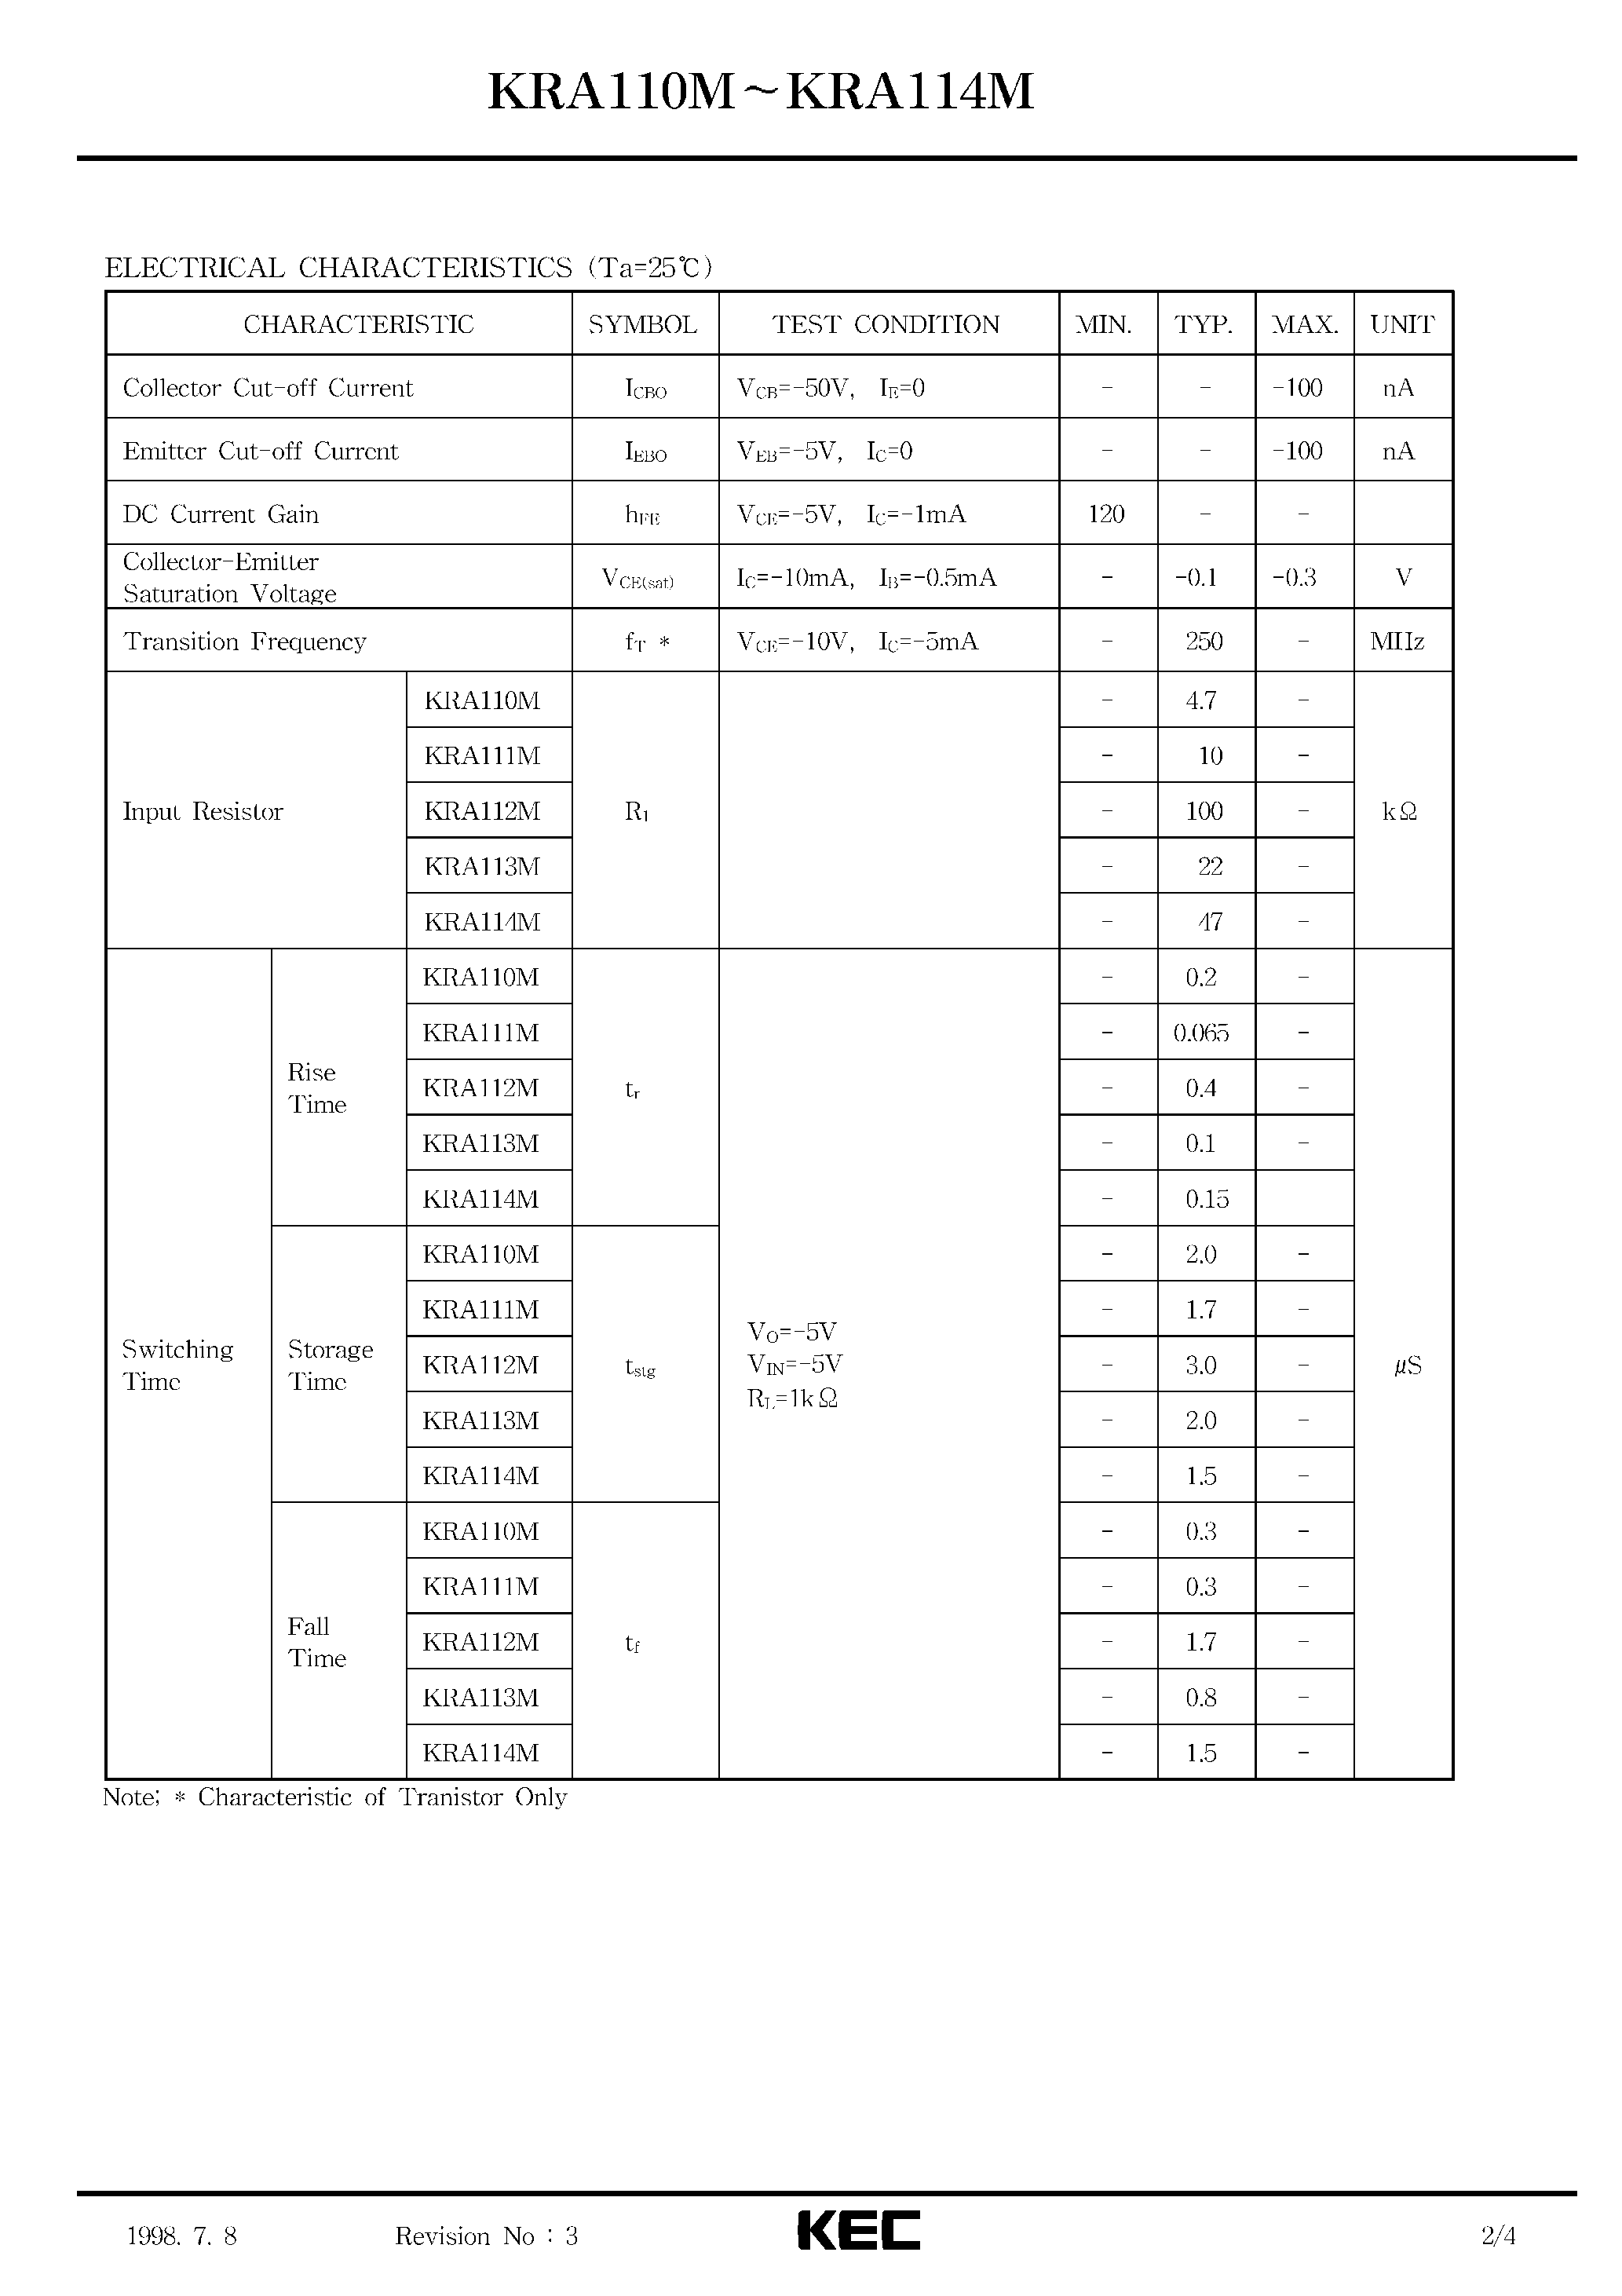 Datasheet KRA110M - (KRA110M - KRA114M) EPITAXIAL PLANAR PNP TRANSISTOR page 2